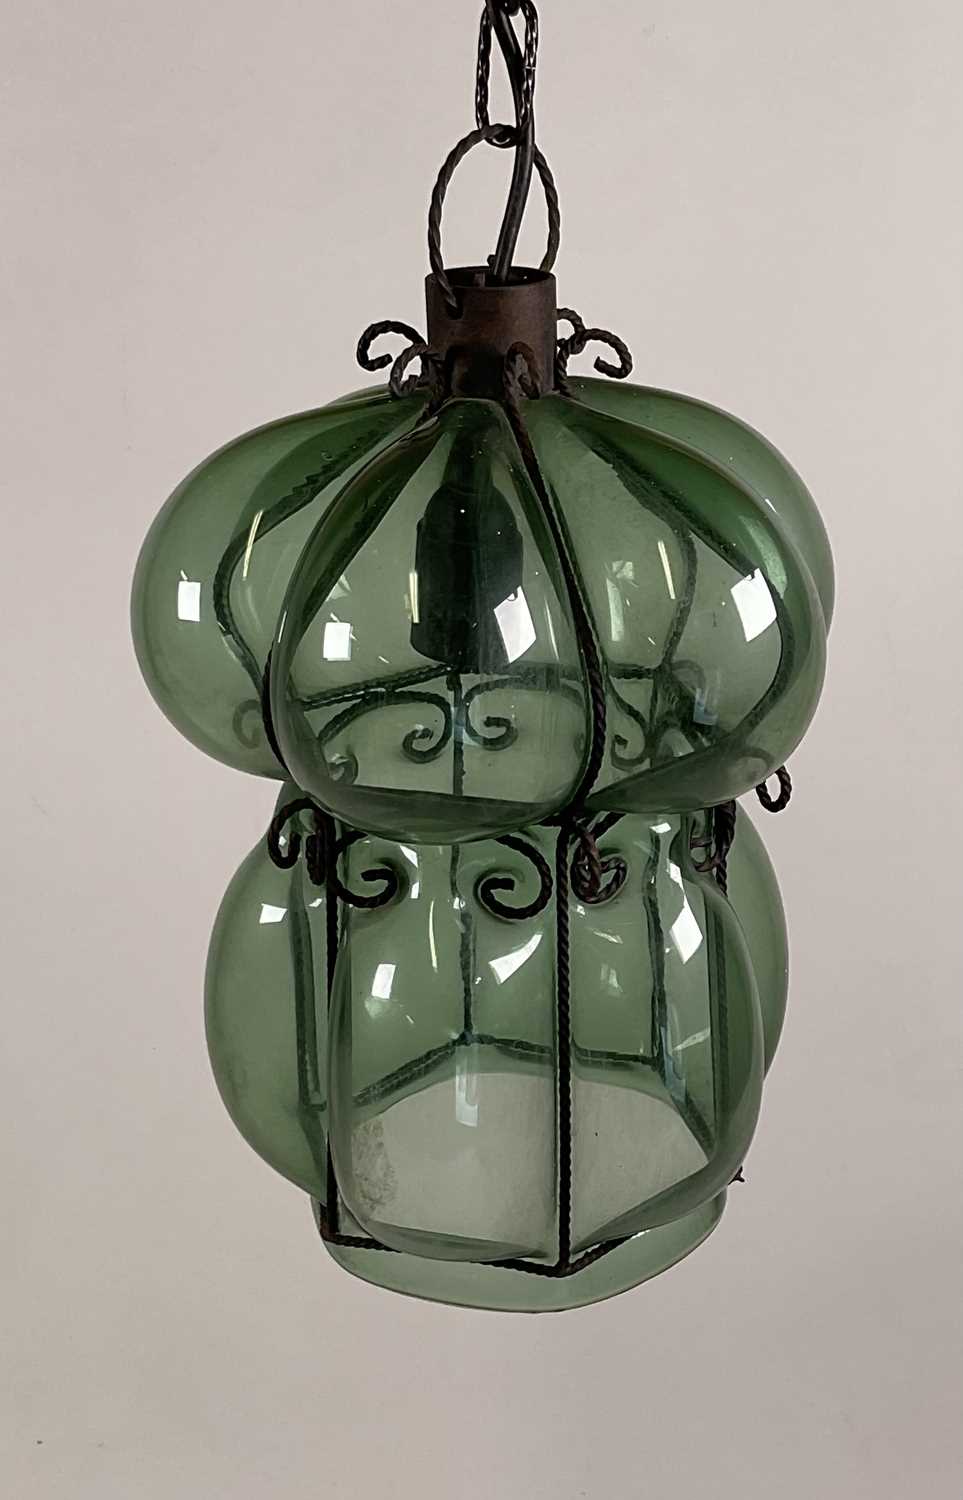 A Venetian glass, hand blown green bubble pendant light with metal framework. H: 34cm